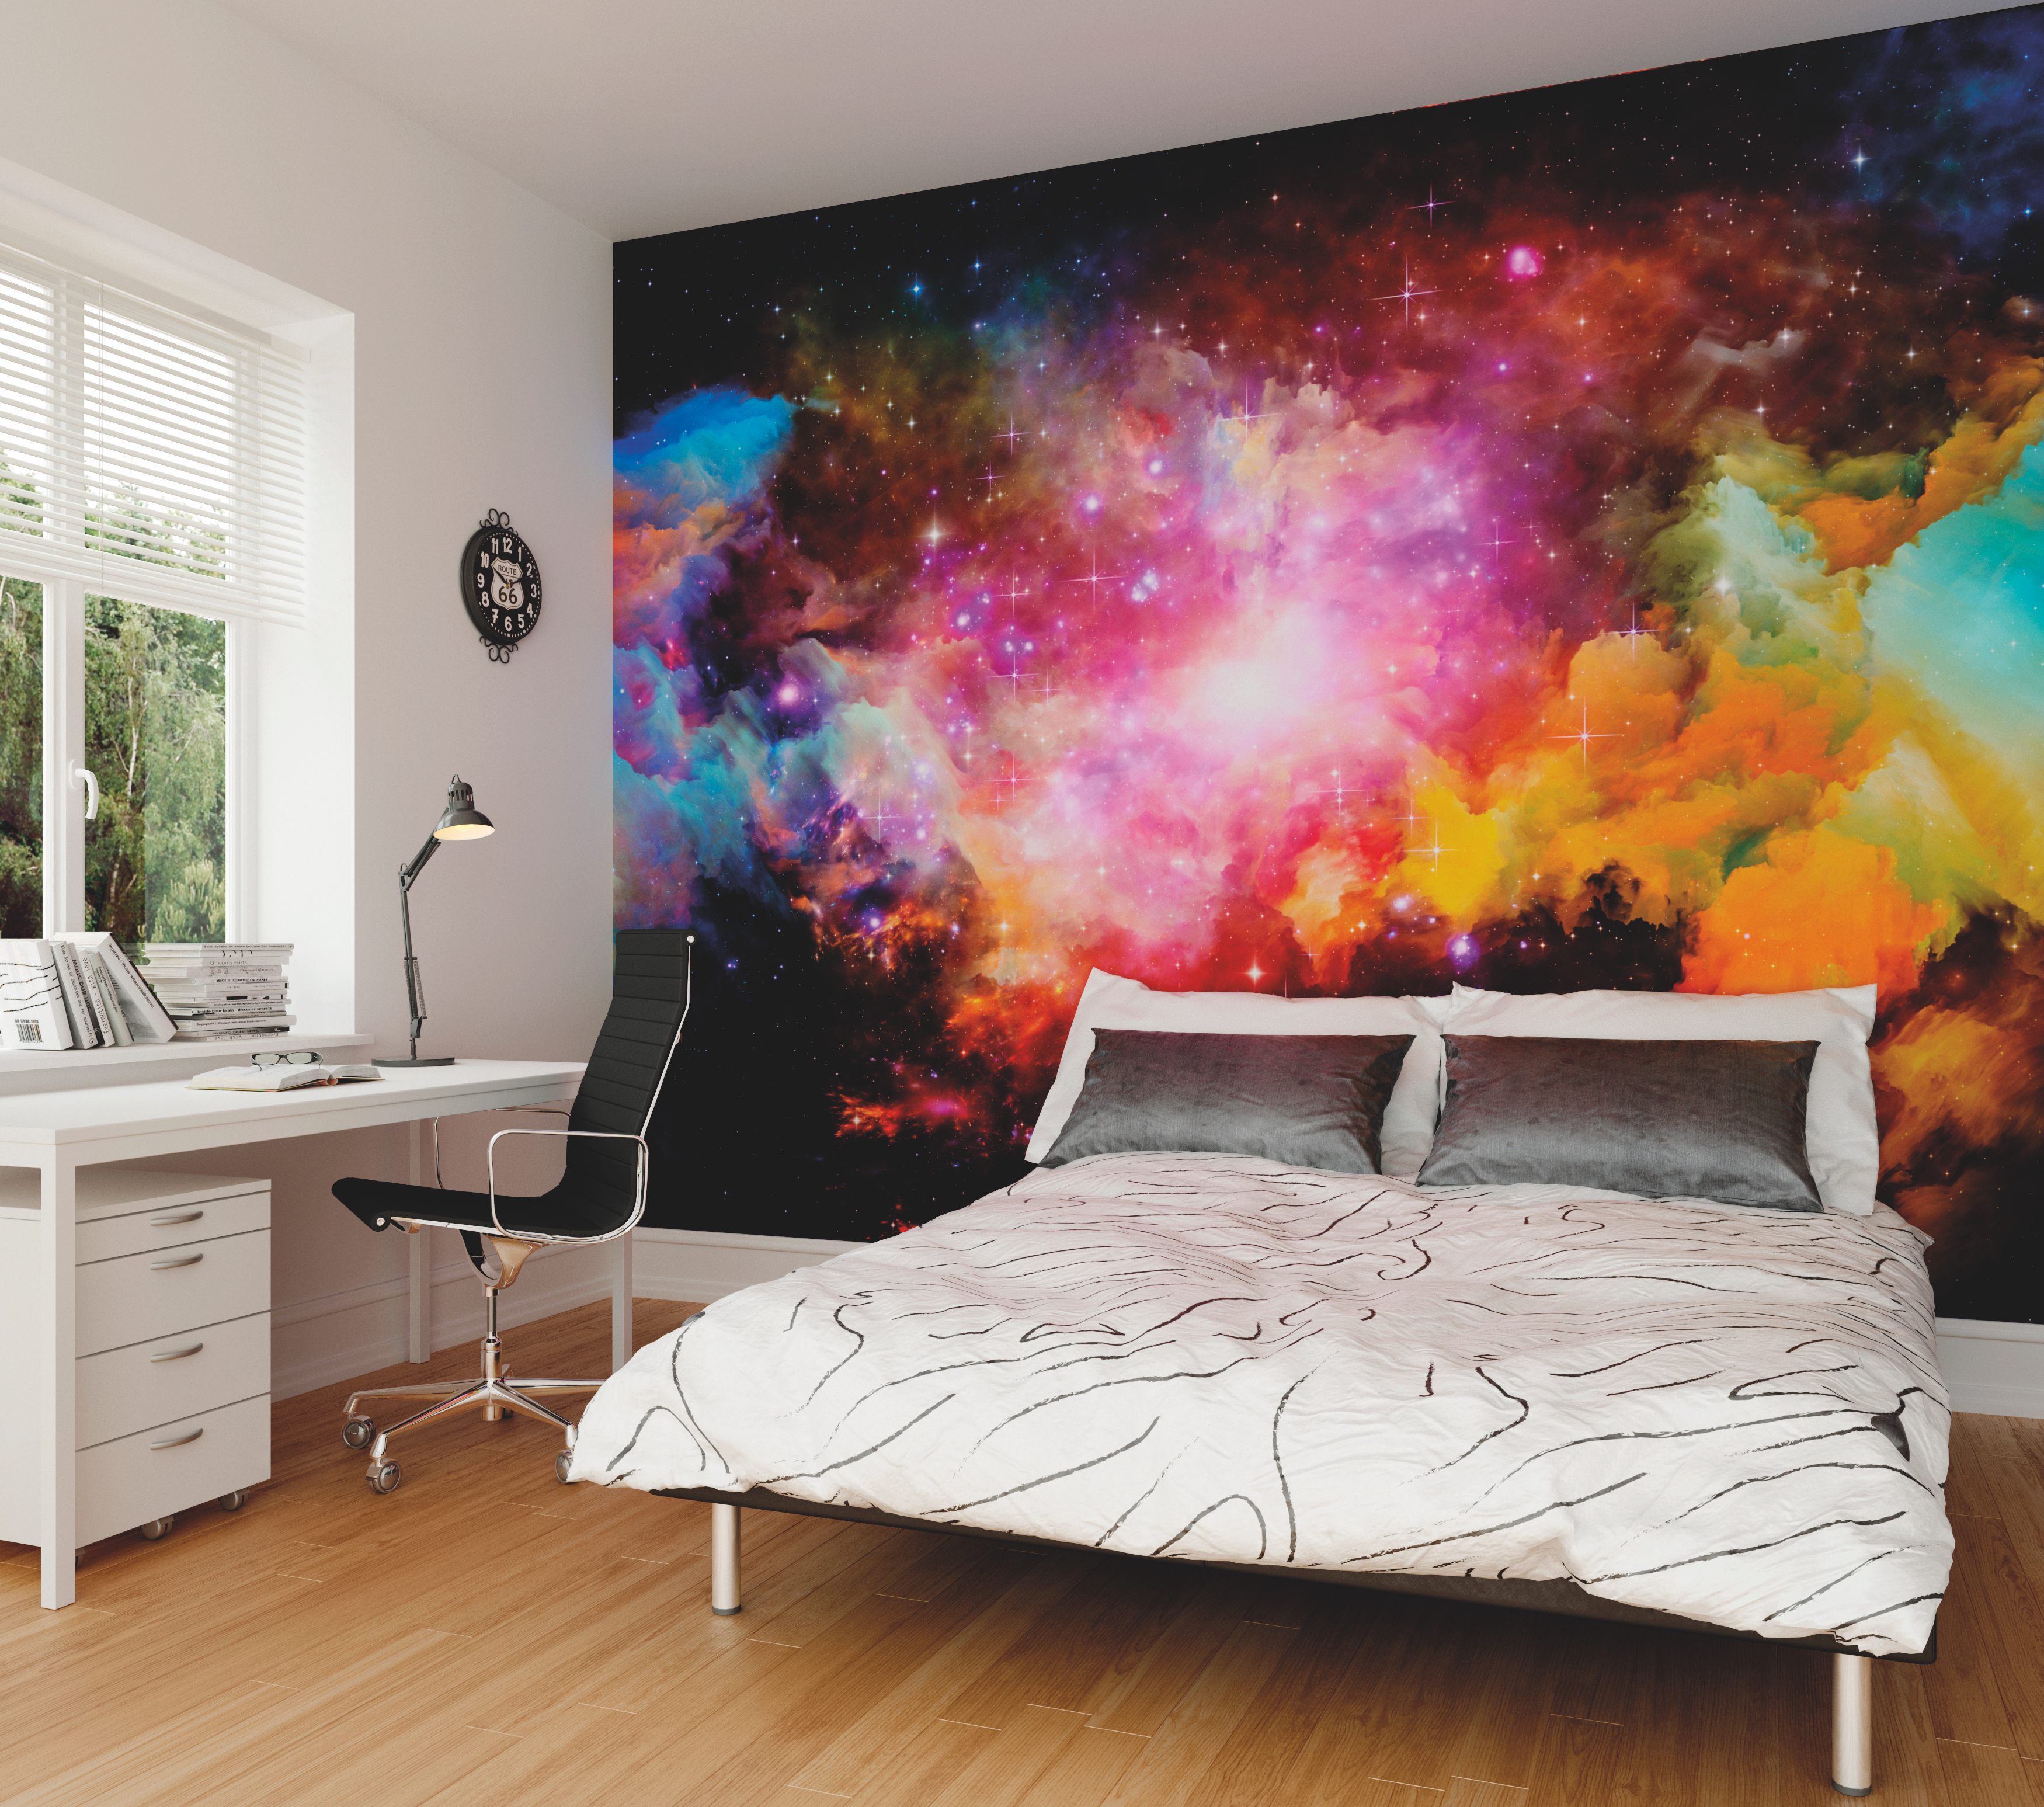 Fototapet Galaxy Stars L, Multi, Origin Murals, 350x280cm 350x280cm